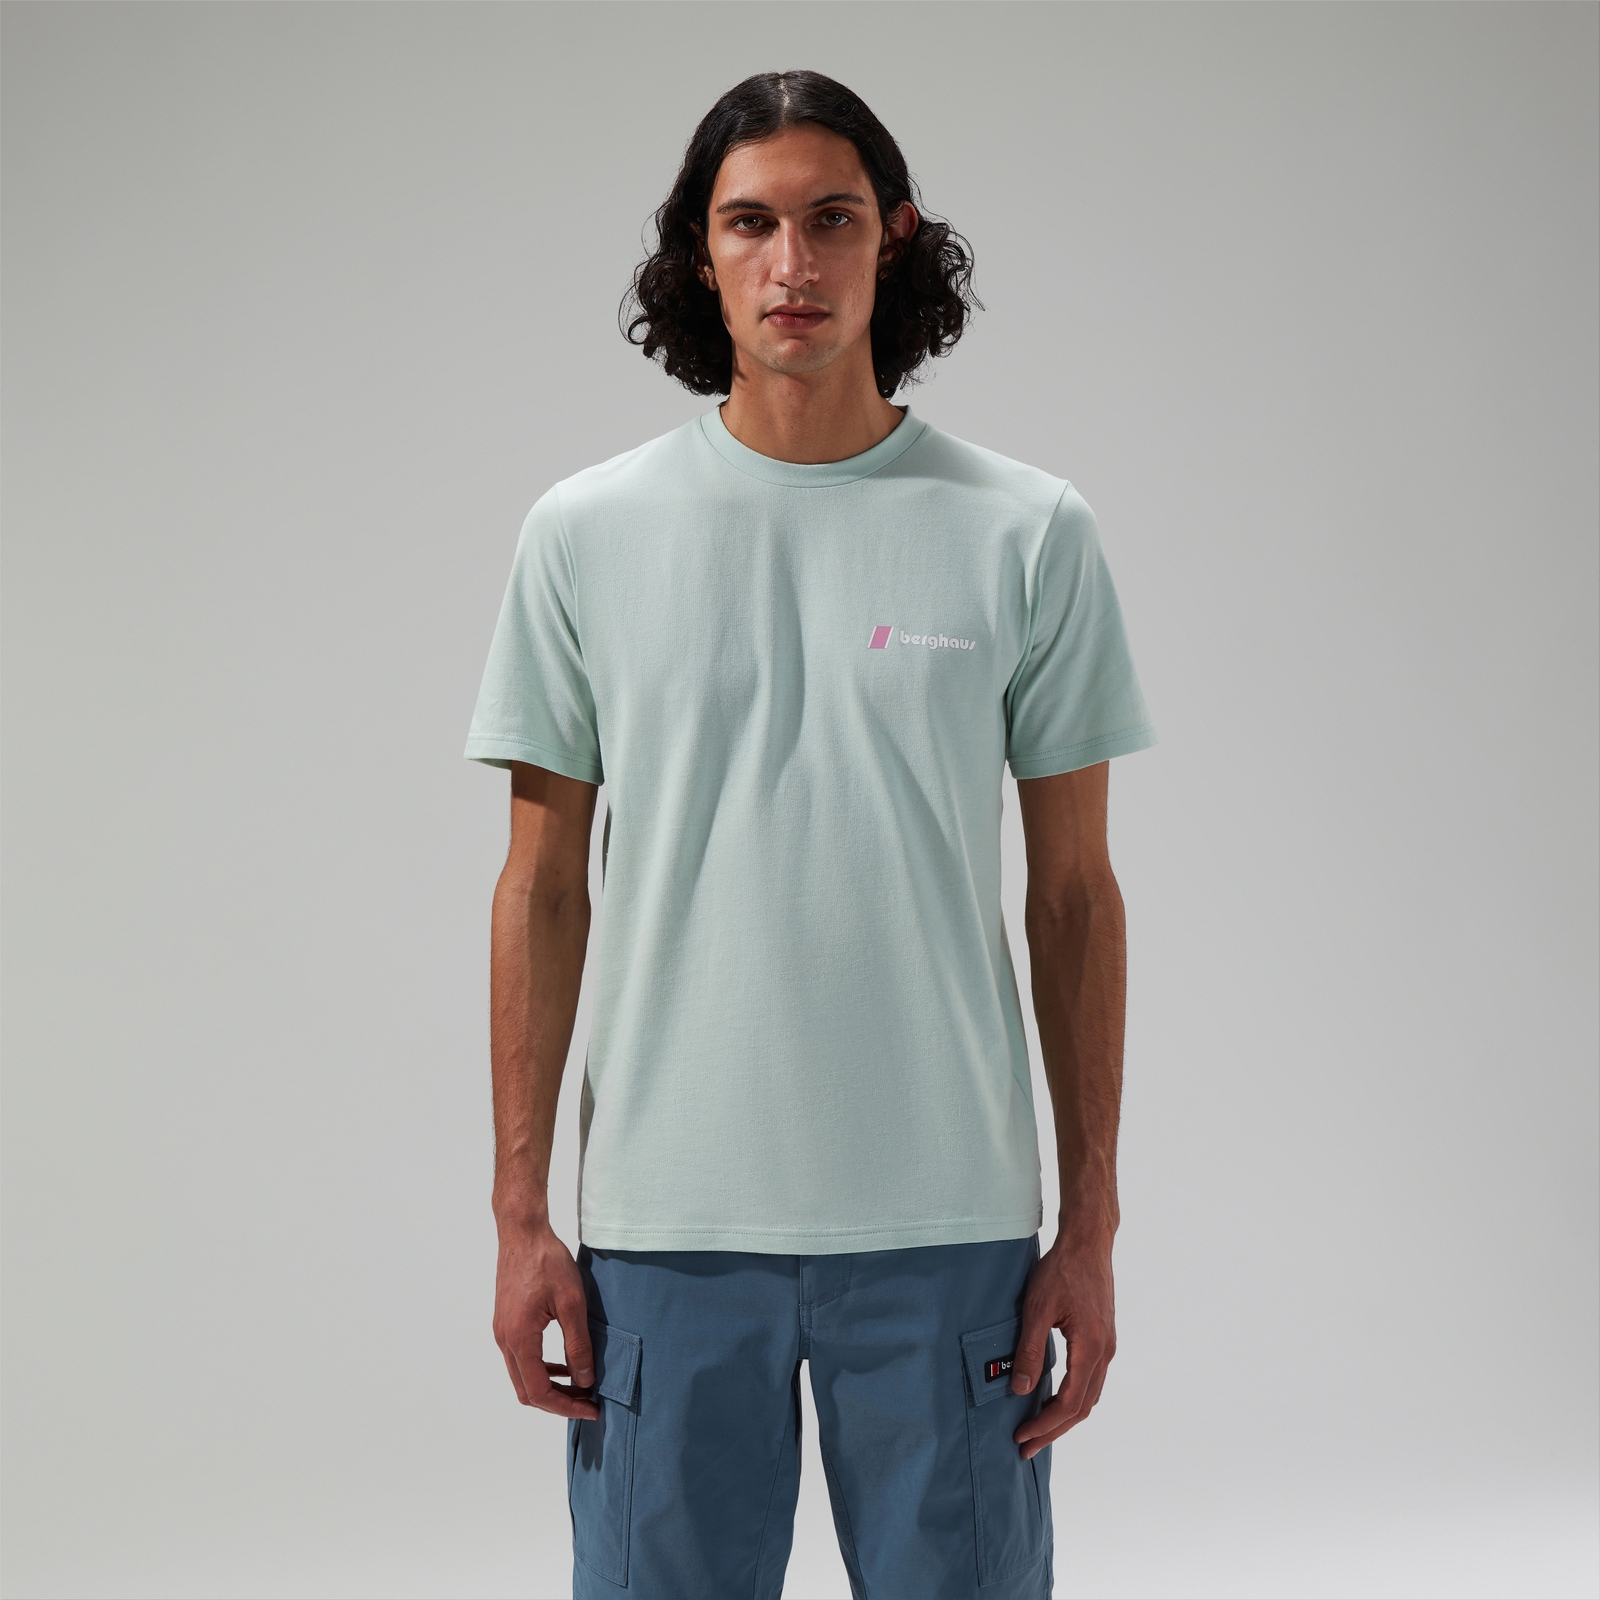 Berghaus Unisex Natural Grit Short Sleeve T-Shirt Green